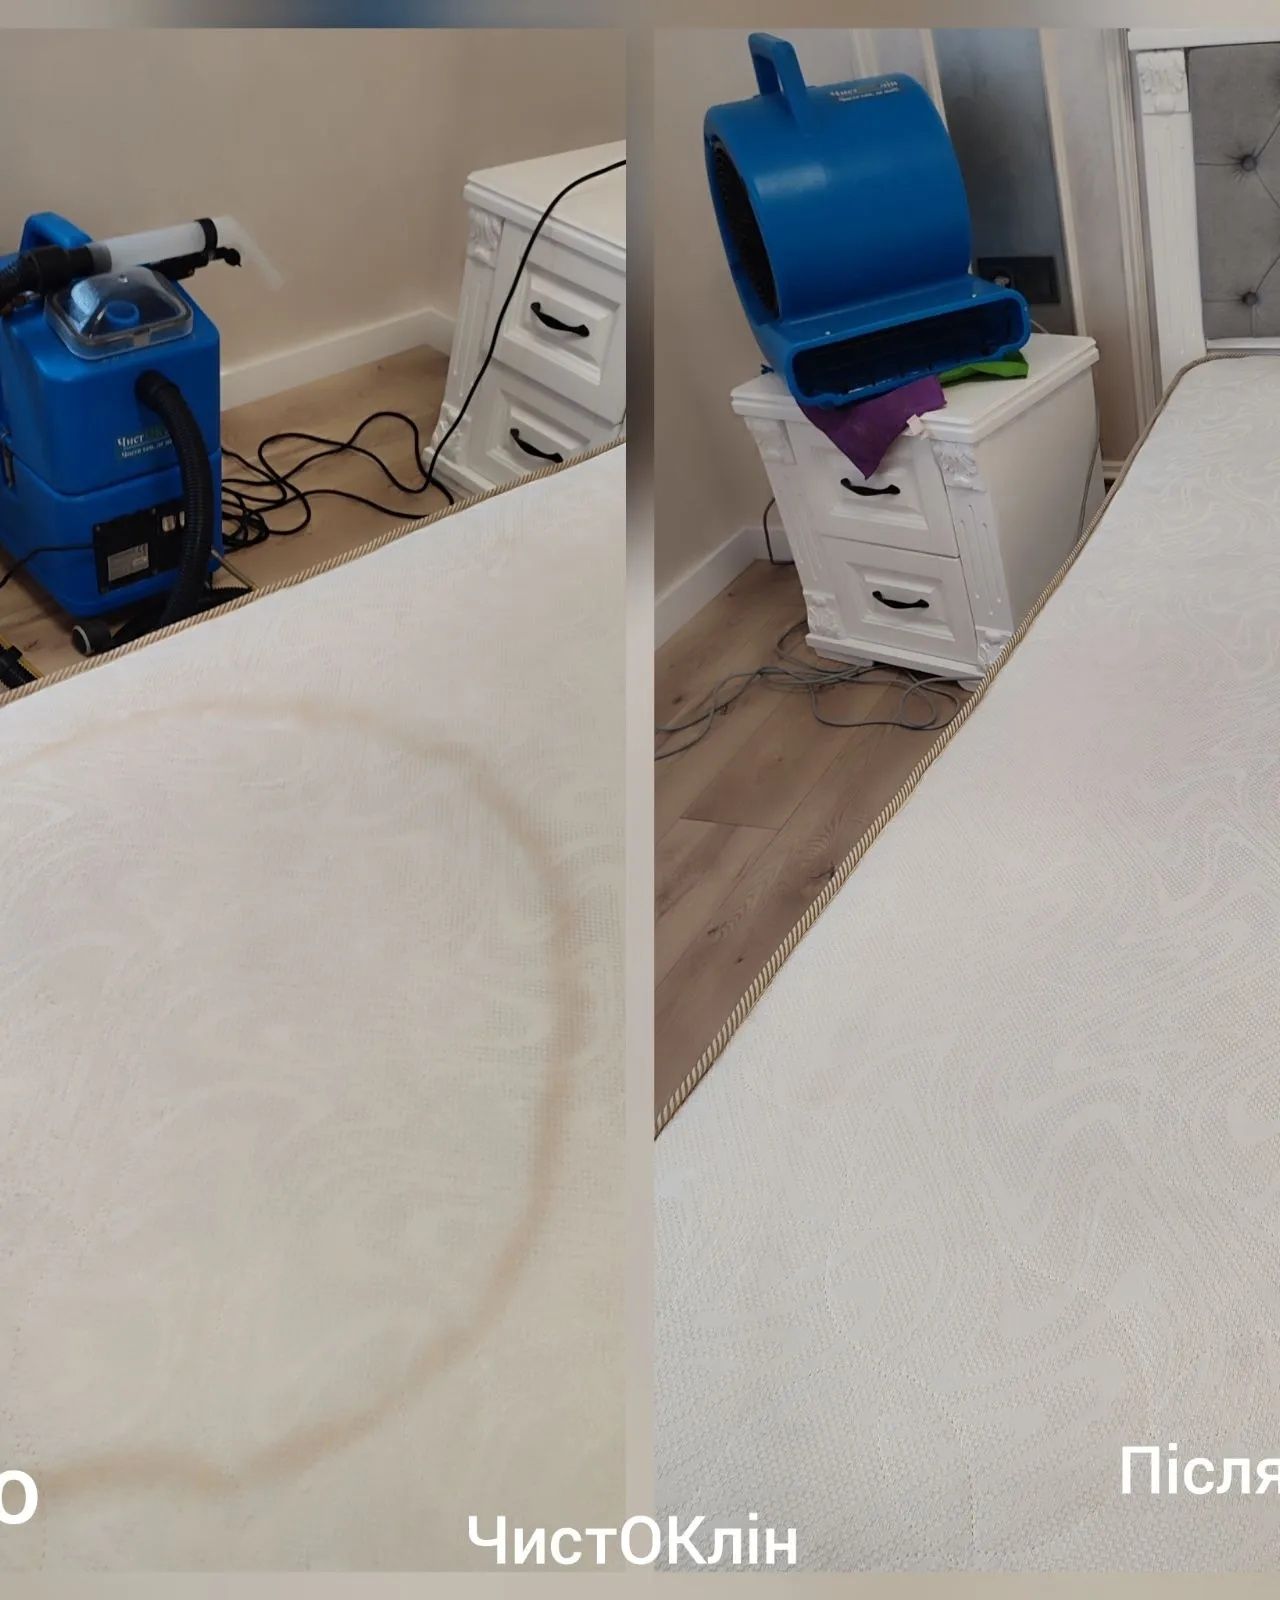 Хімчистка м'яких меблів, килимового покриття.клінінг сервіс Чистоклін